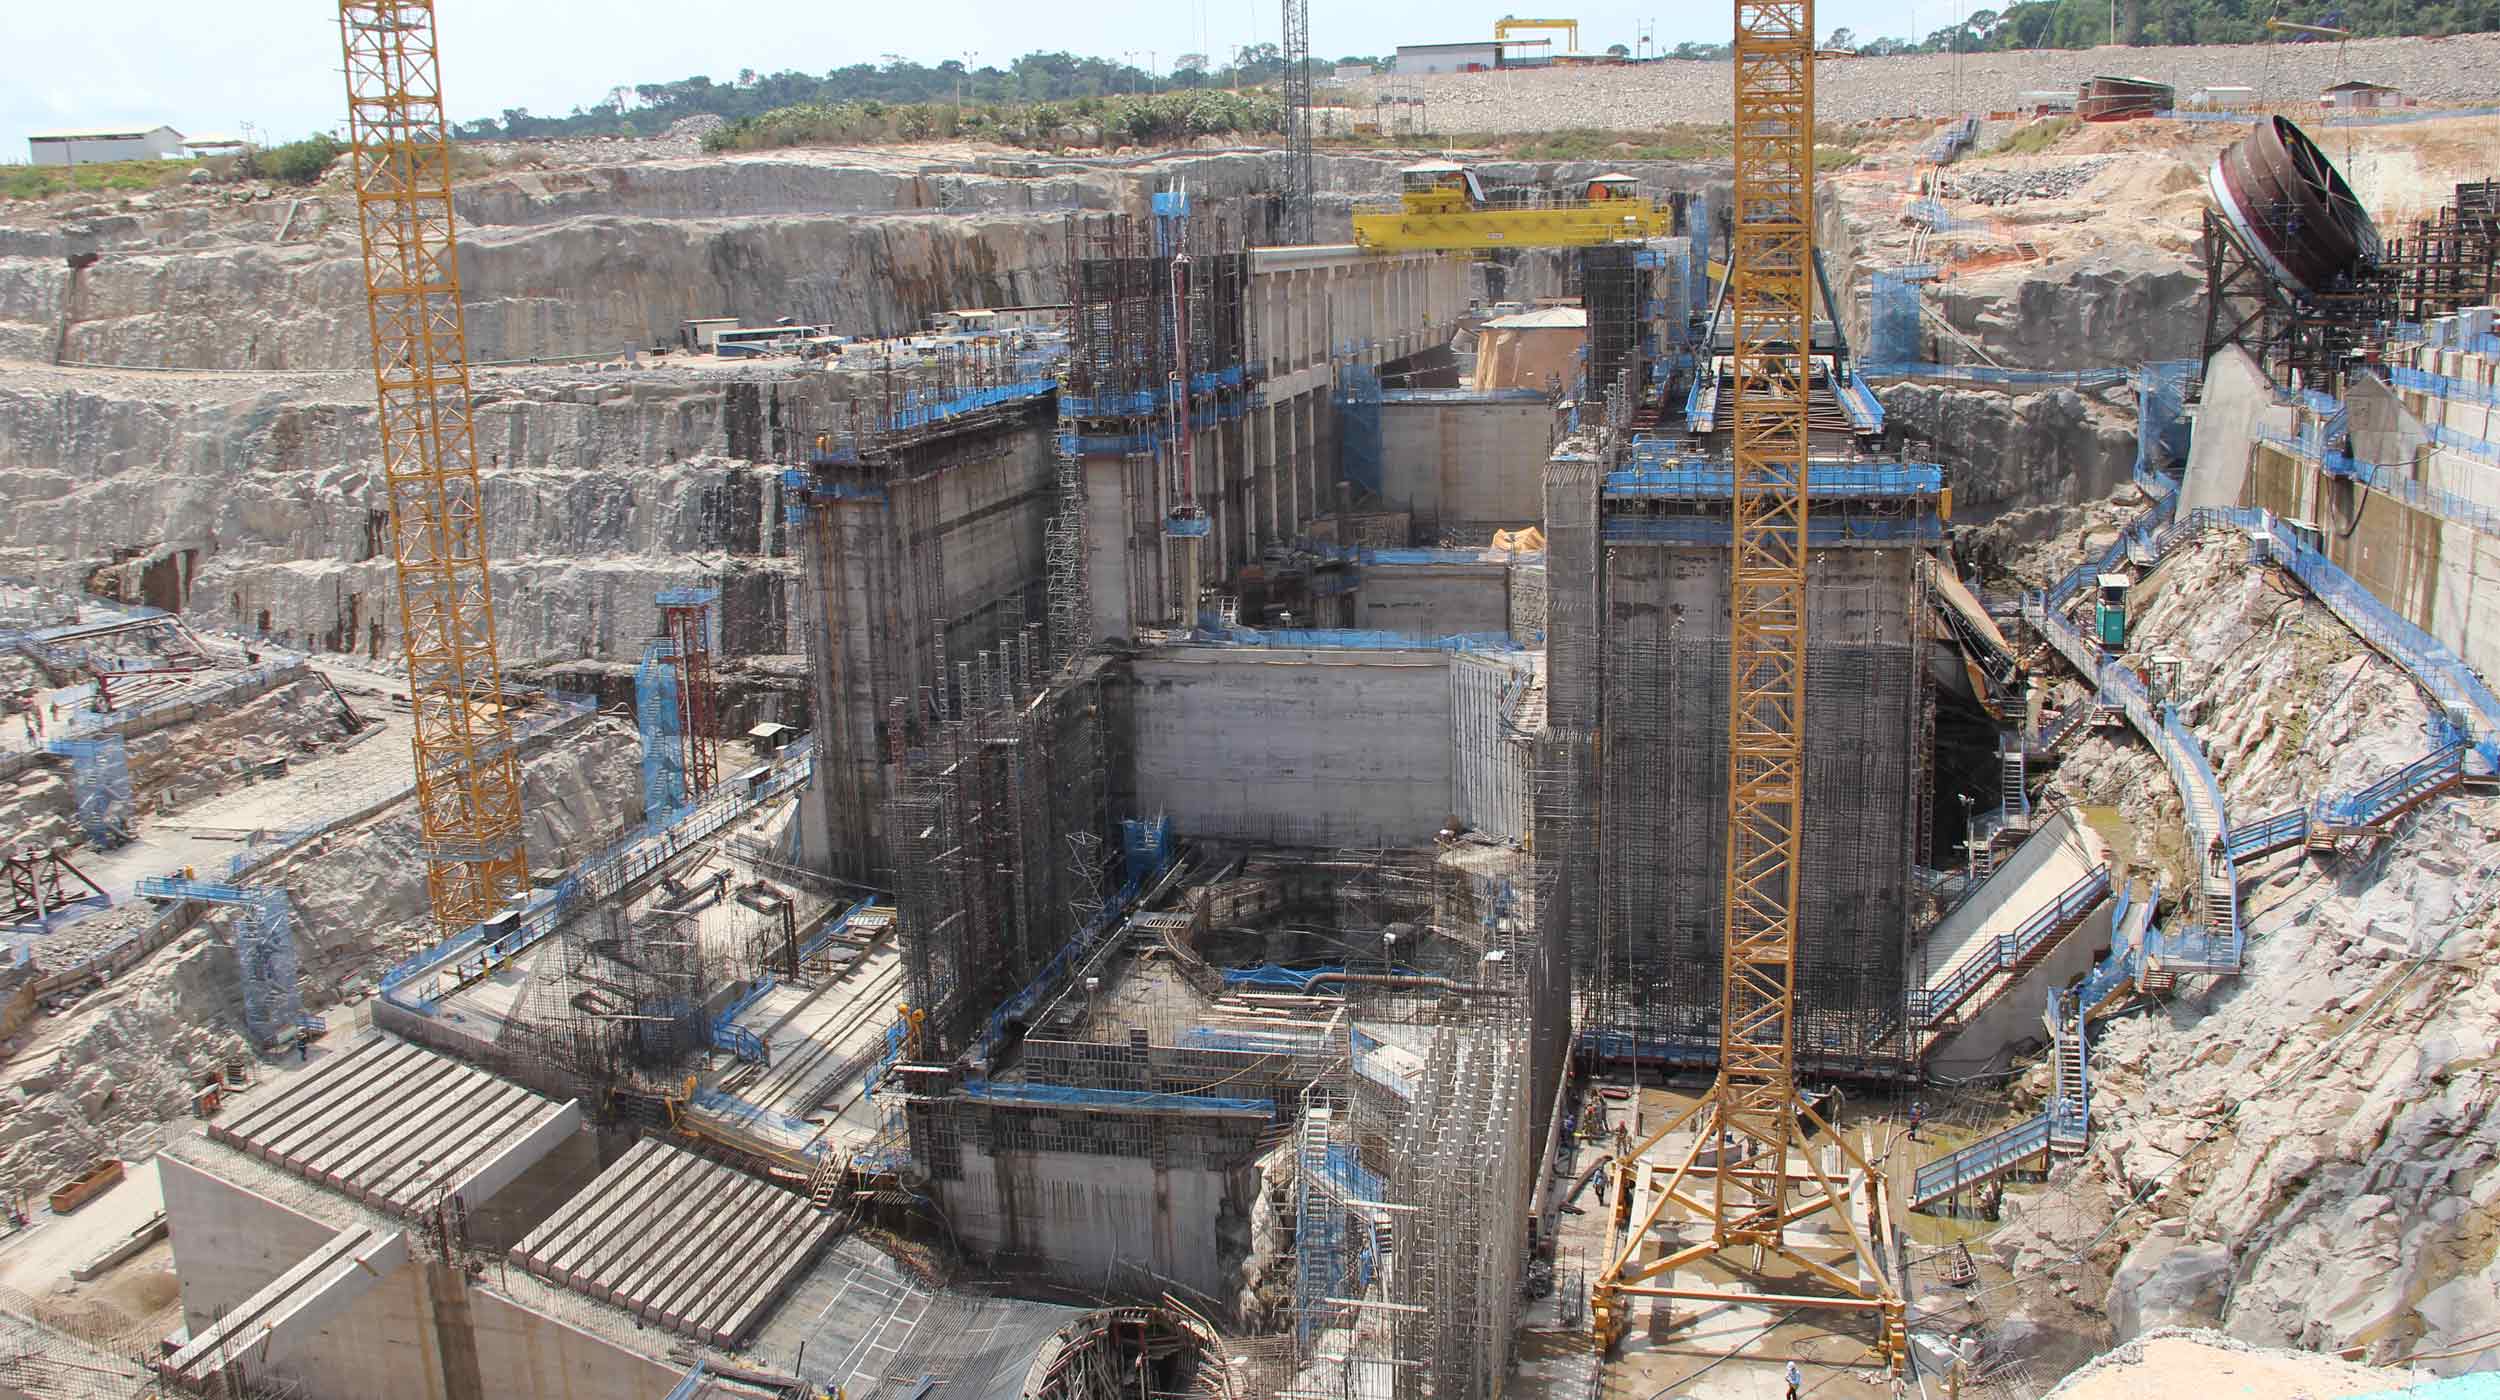 A usina hidrelétrica Teles Pires faz parte do plano de infraestrutura contemplado no Programa de Aceleração do Crescimento (PAC) do Governo Federal do Brasil.